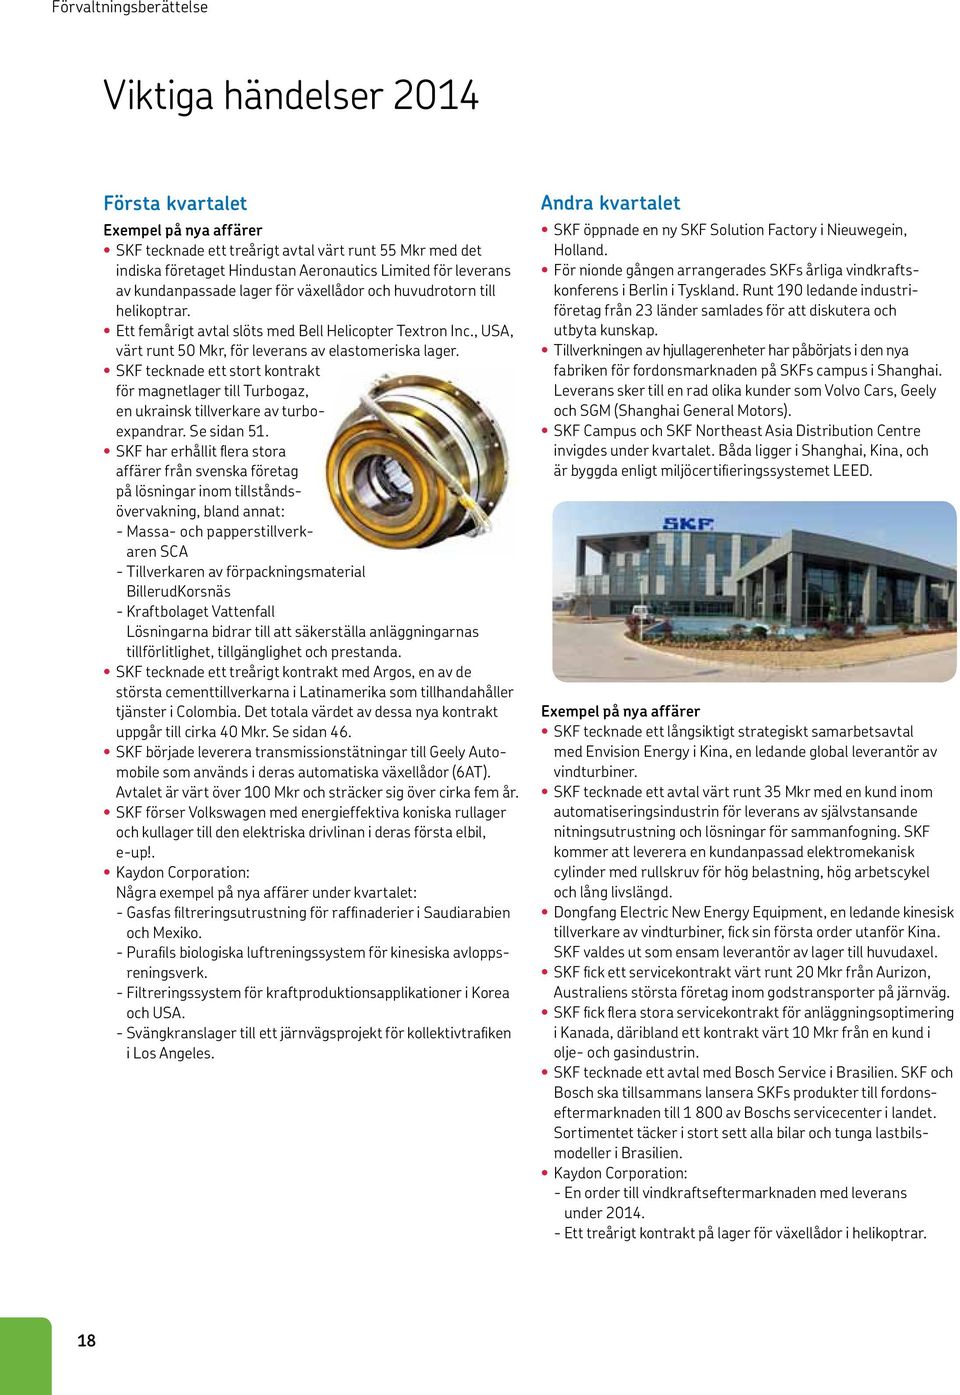 SKF tecknade ett stort kontrakt för magnetlager till Turbogaz, en ukrainsk tillverkare av turboexpandrar. Se sidan 51.